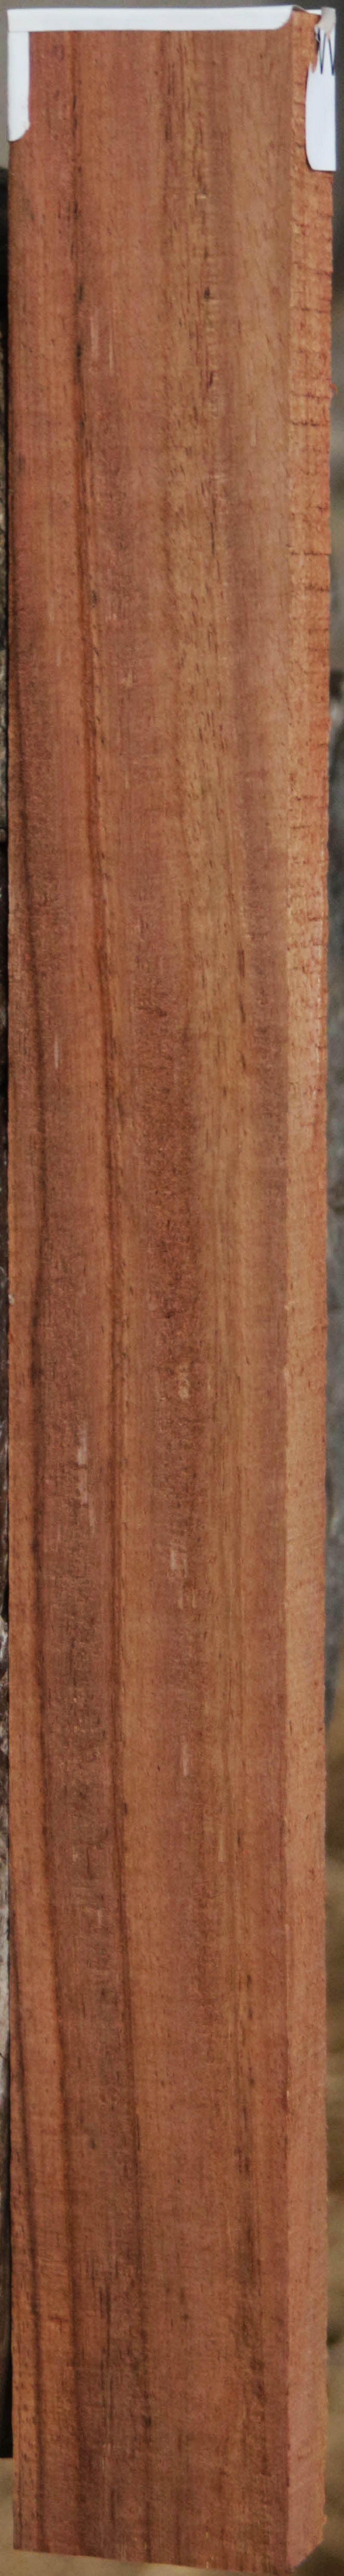 Panama Rosewood